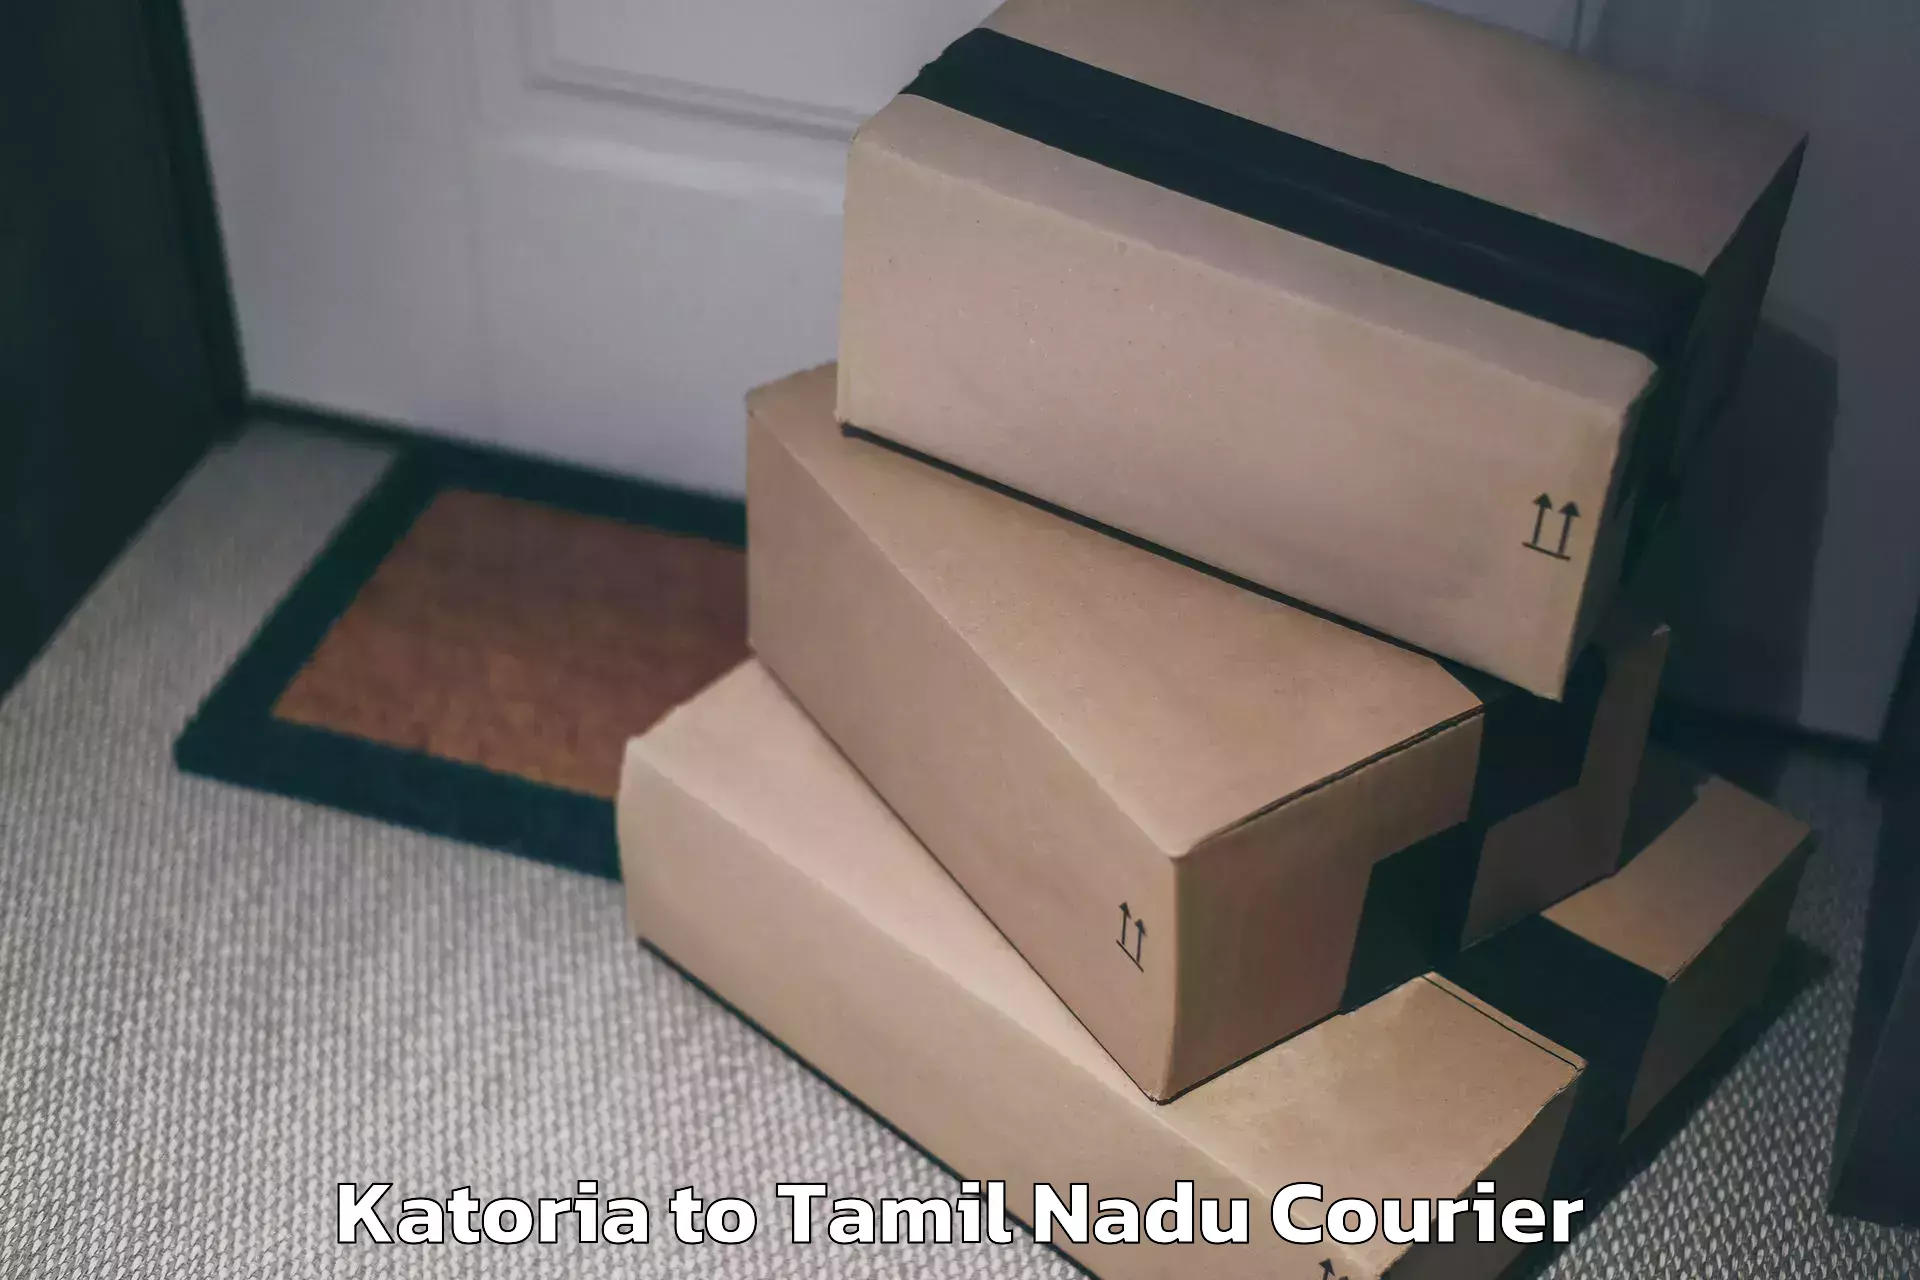 Luggage shipment specialists Katoria to Tamil Nadu